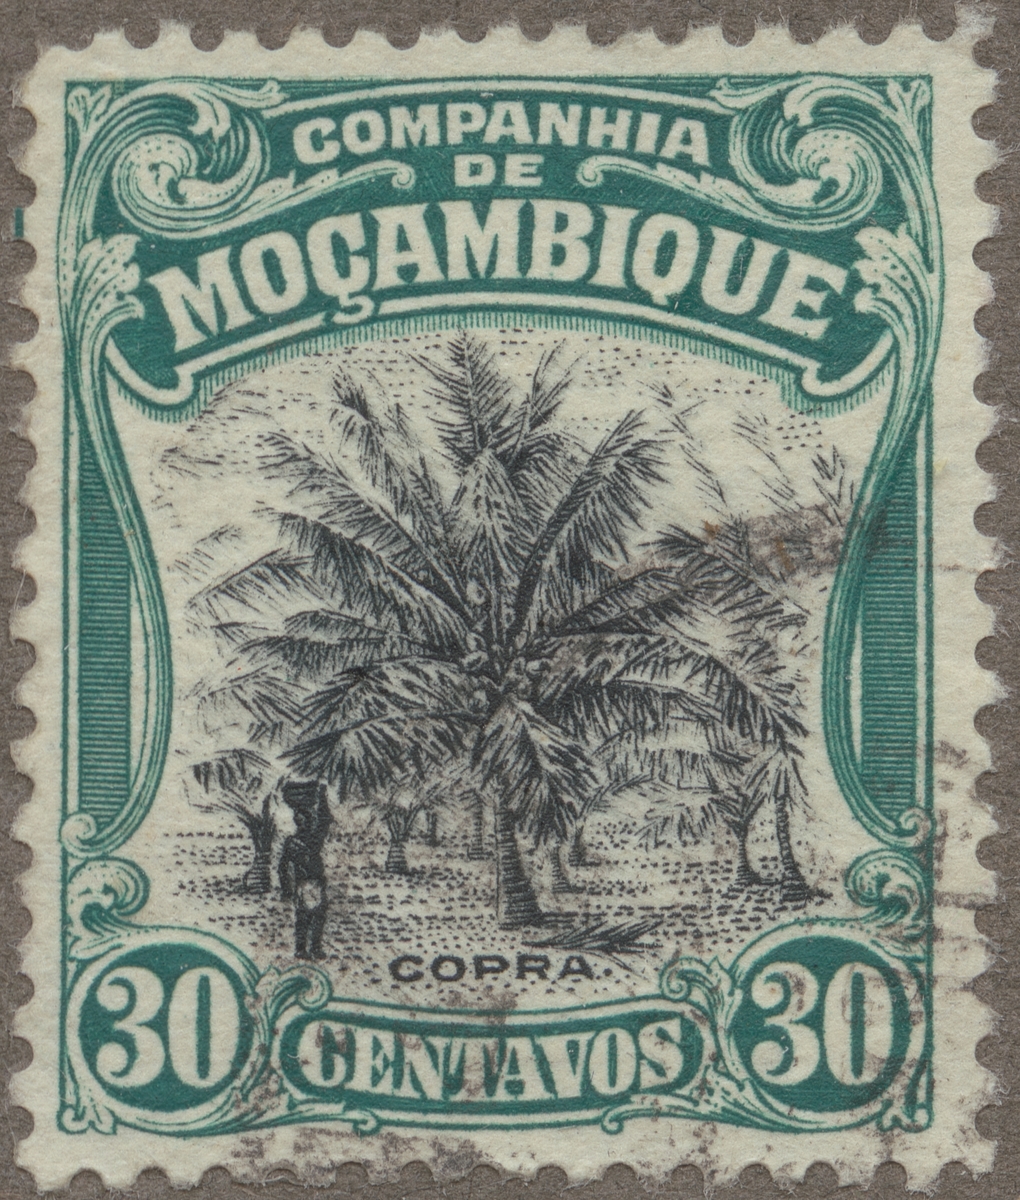 Frimärke ur Gösta Bodmans filatelistiska motivsamling, påbörjad 1950.
Frimärke från Companhia de Mocambique, Ostafrika, 1918. Motiv av copra ur kokosnötter för kokosfett.